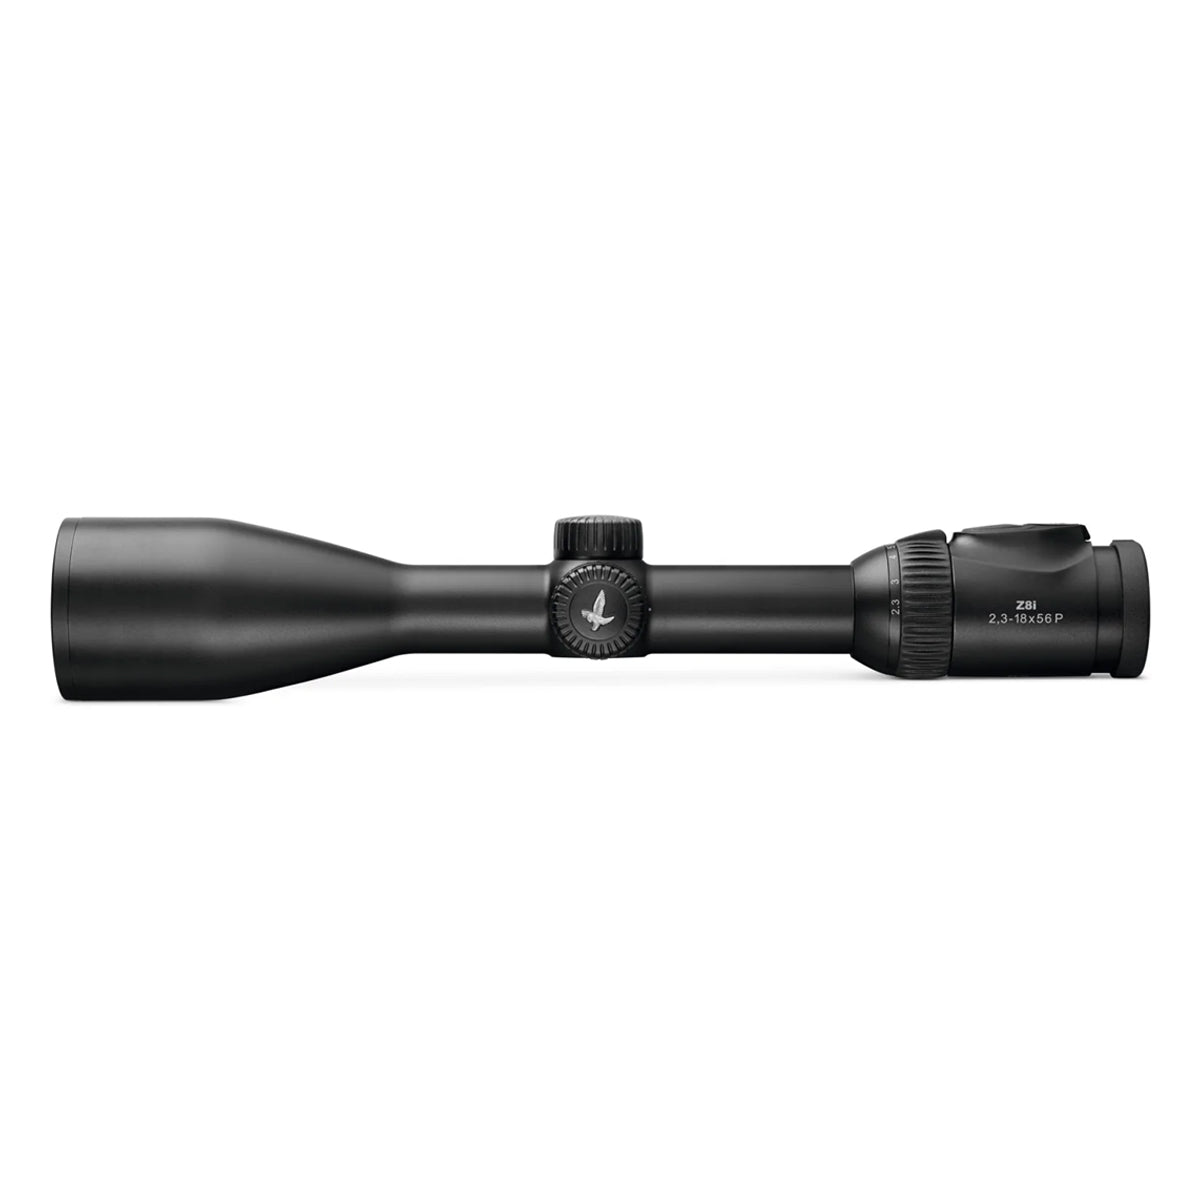 Swarovski Z8i 2.3-18x56 BRXi Riflescope